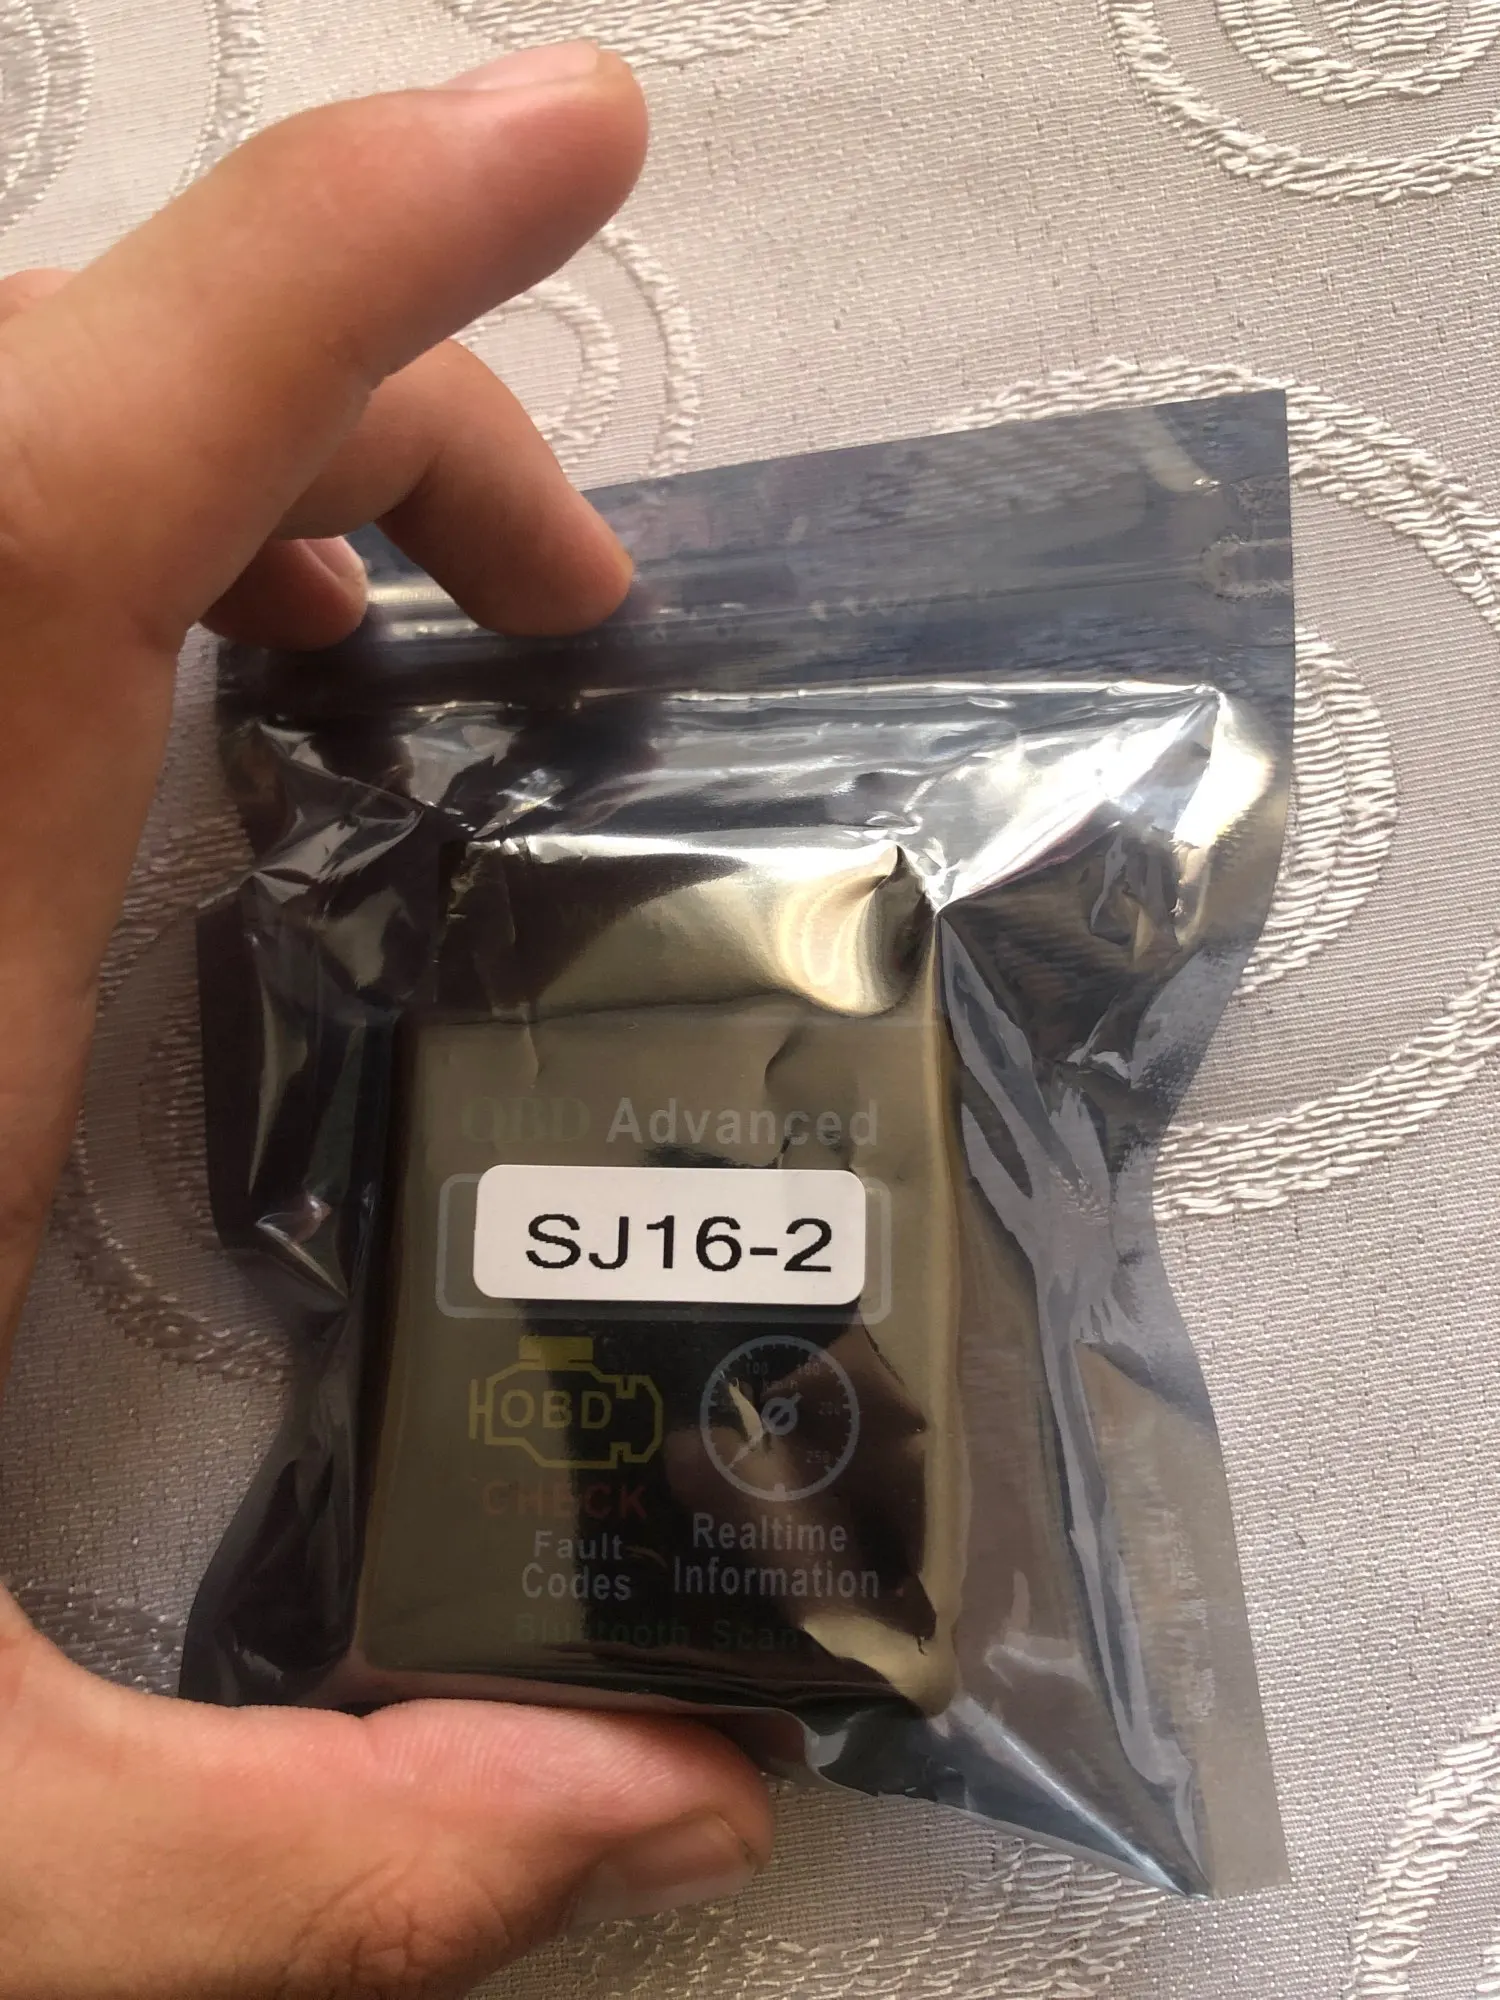 ELM327 Diagnostic Adapter Super Mini ELM 327